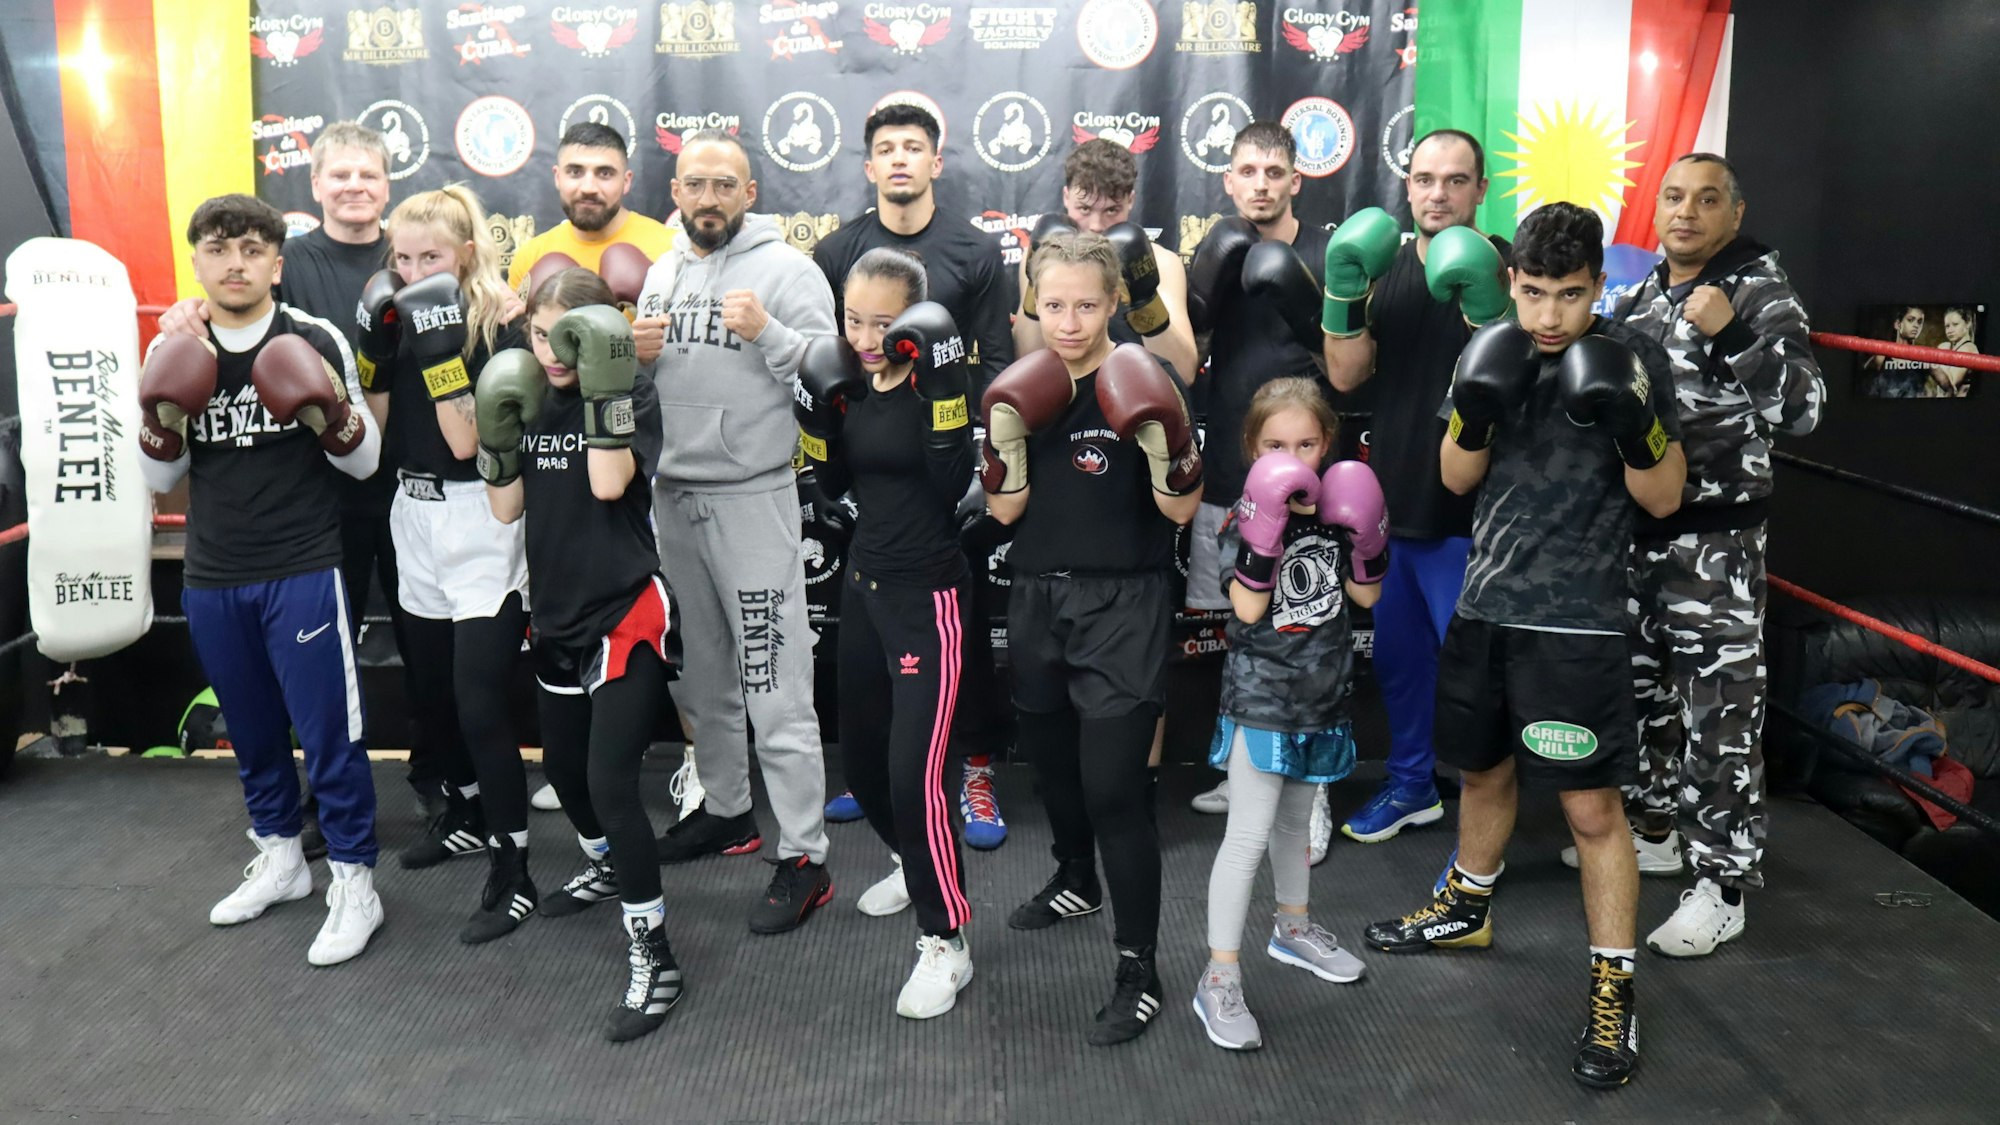 Die Euskirchener Boxschule Fit and Fight veranstaltet im Casino eine Fight Night